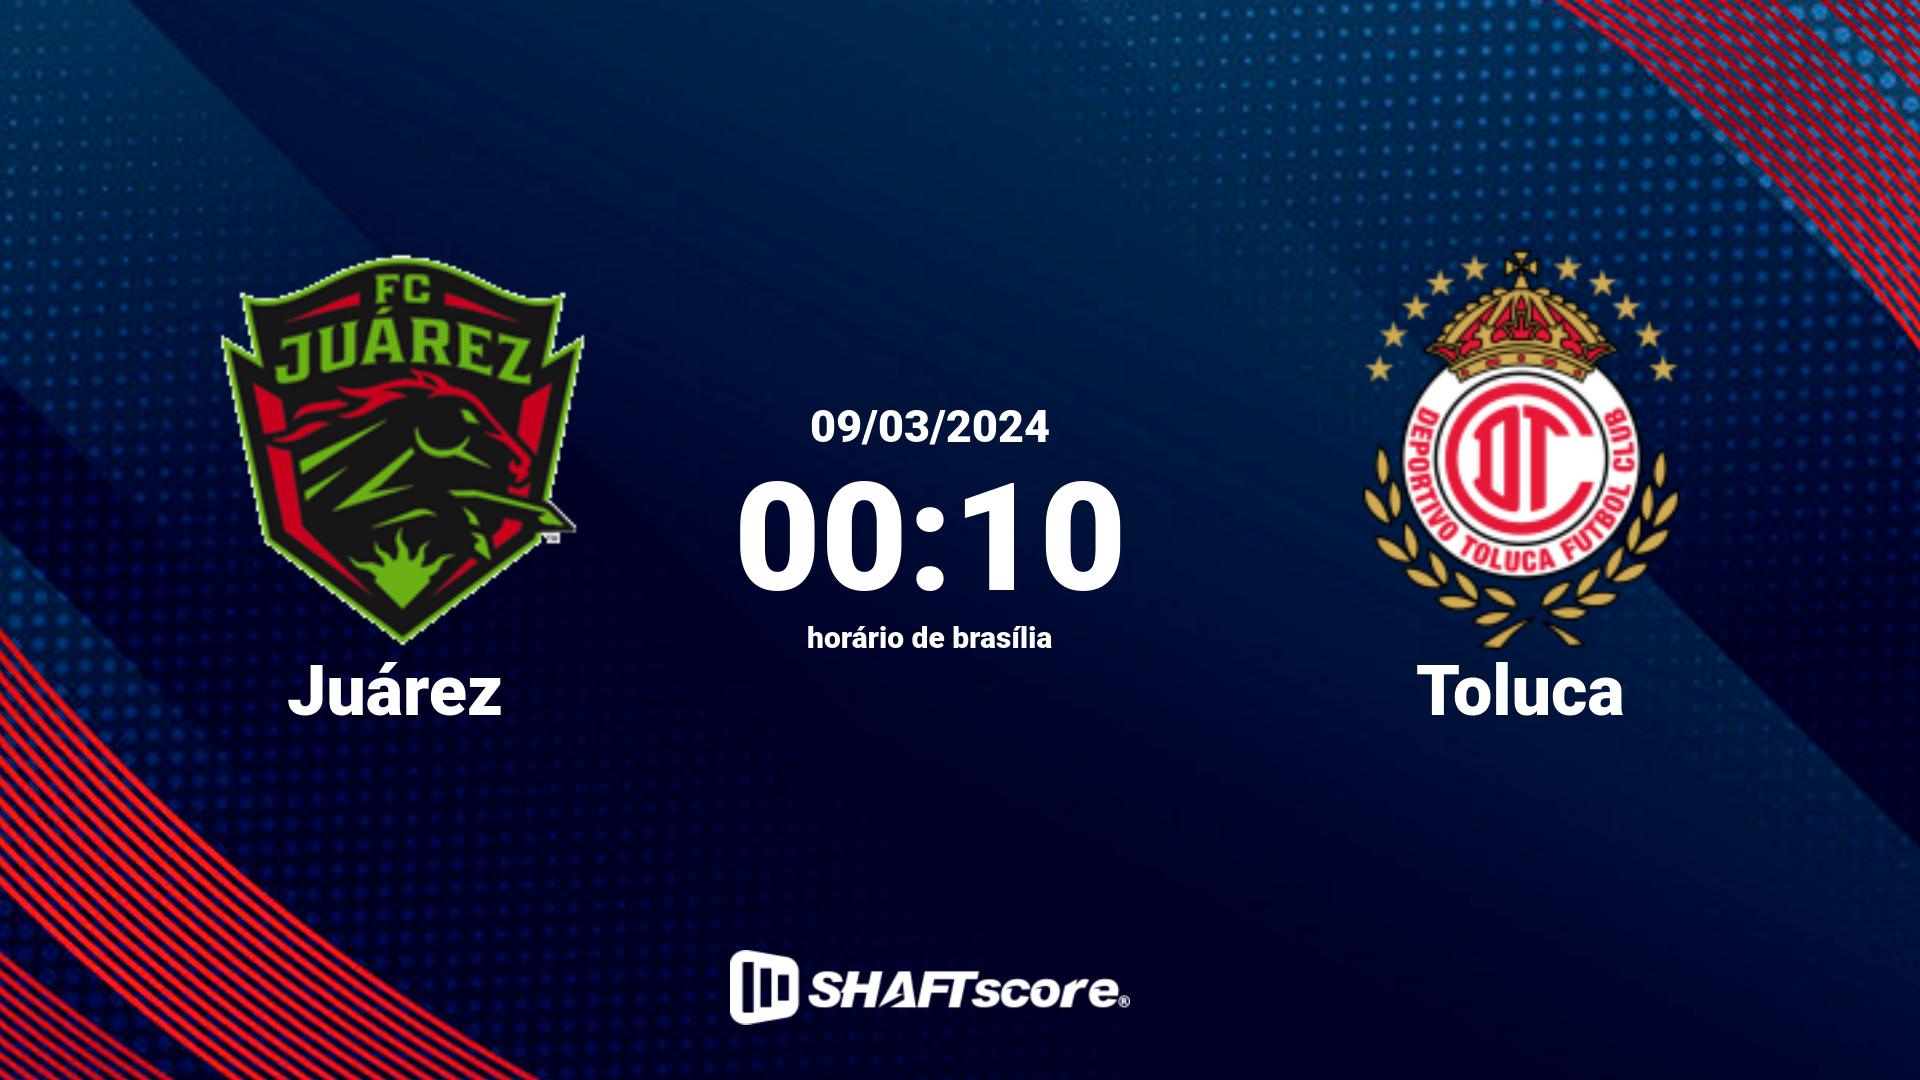 Estatísticas do jogo Juárez vs Toluca 09.03 00:10